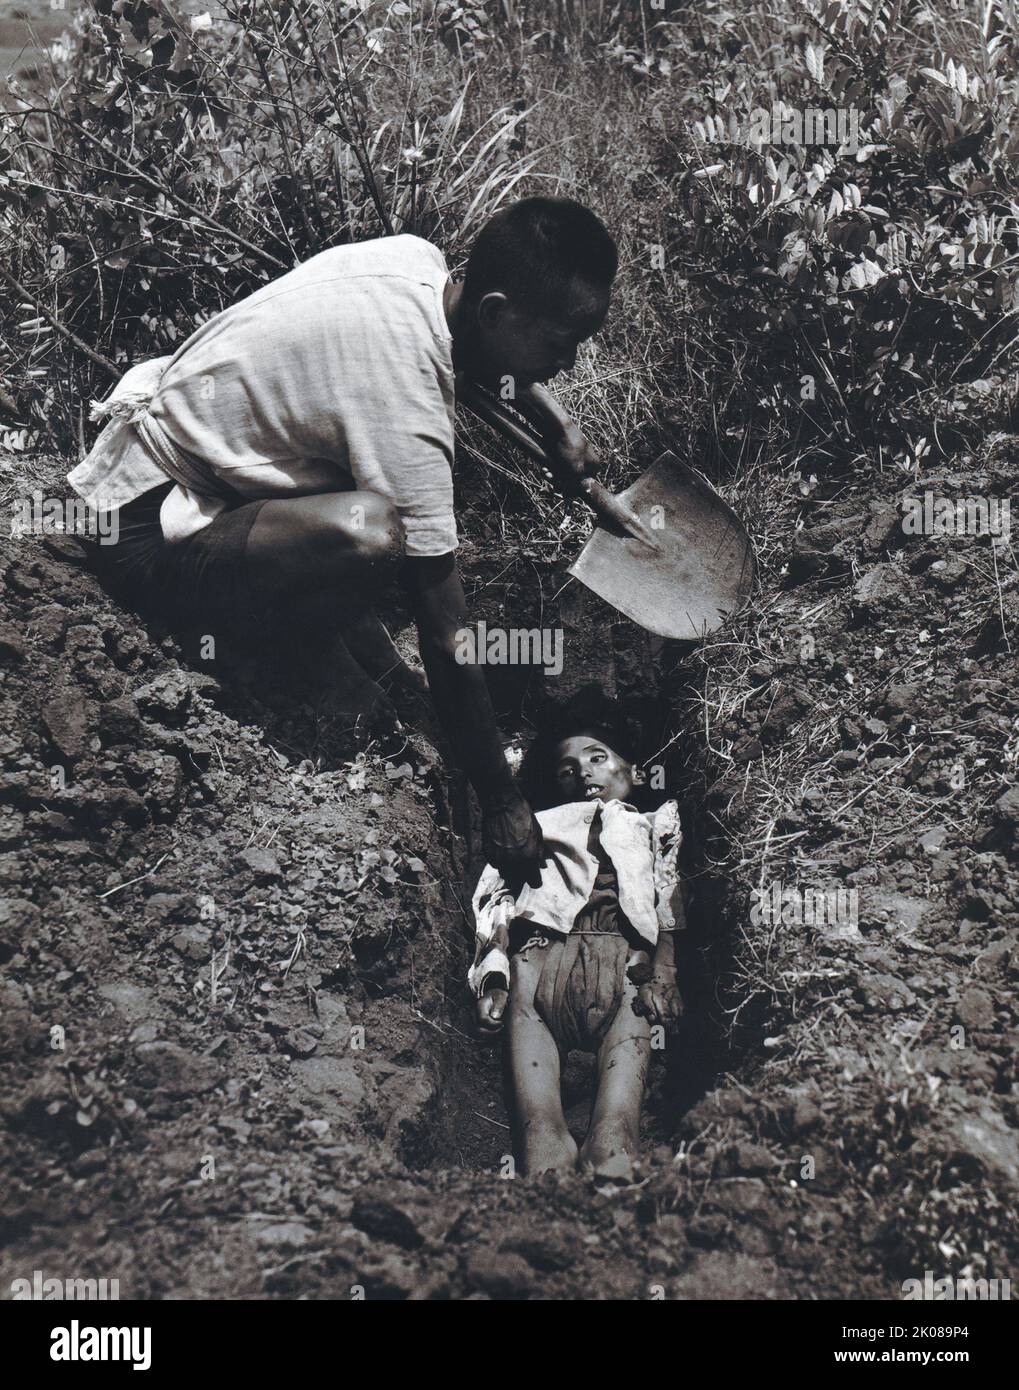 Homme enterrant un enfant dans une zone rurale de la province de Kiangsu ou de la province du Yunnan en Chine, 1946 Banque D'Images